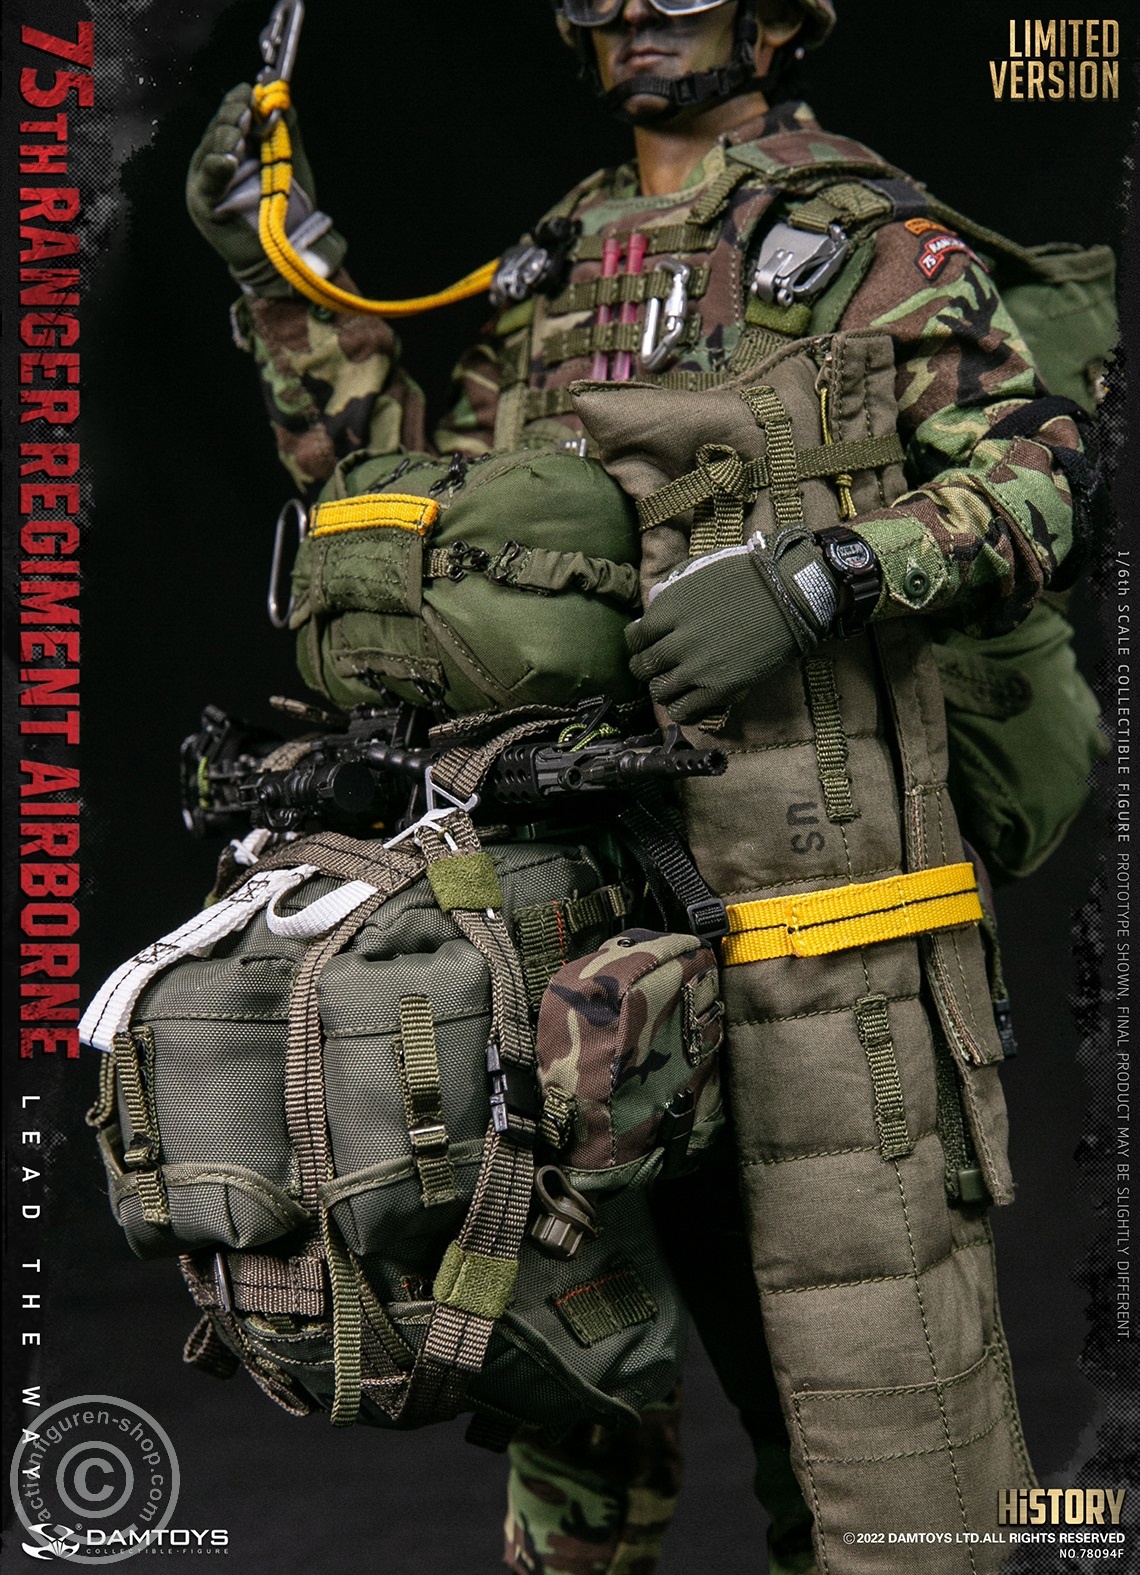 75th Ranger Regiment - Airborne Saw Gunner - Limited Version